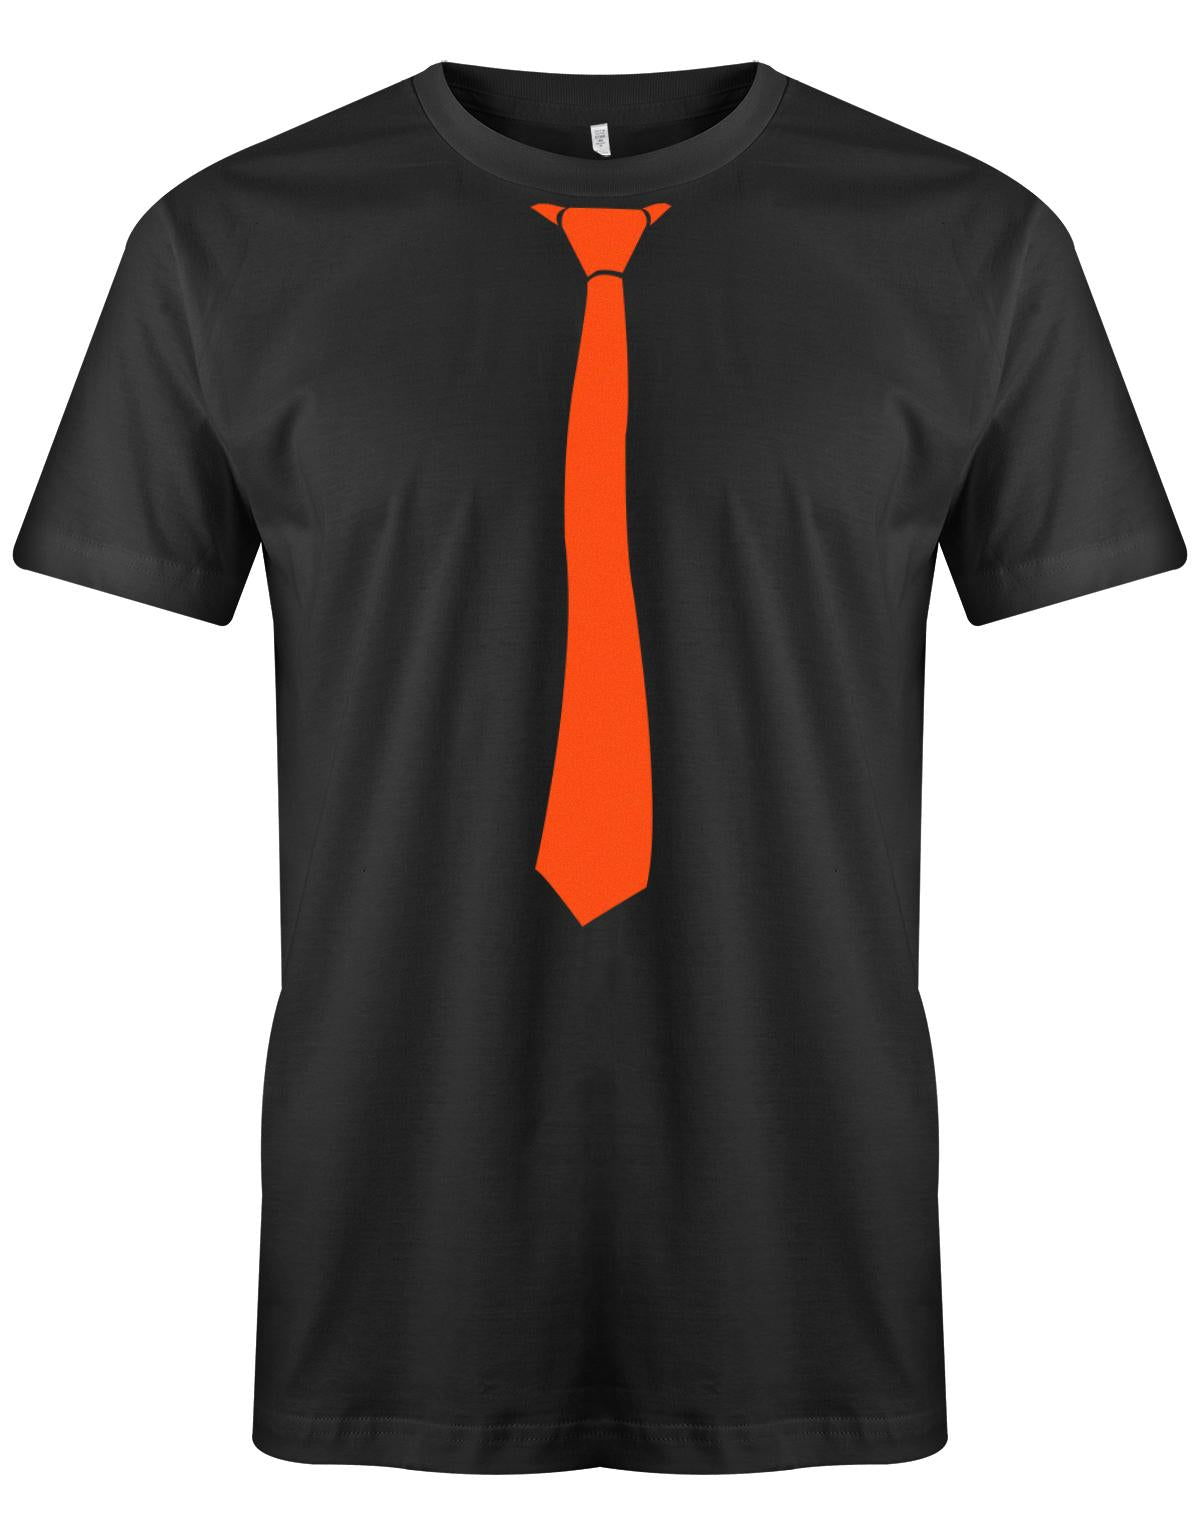 Krawatte-Sportlich-Herren-Shirt-JGA-Schwarz-Orange